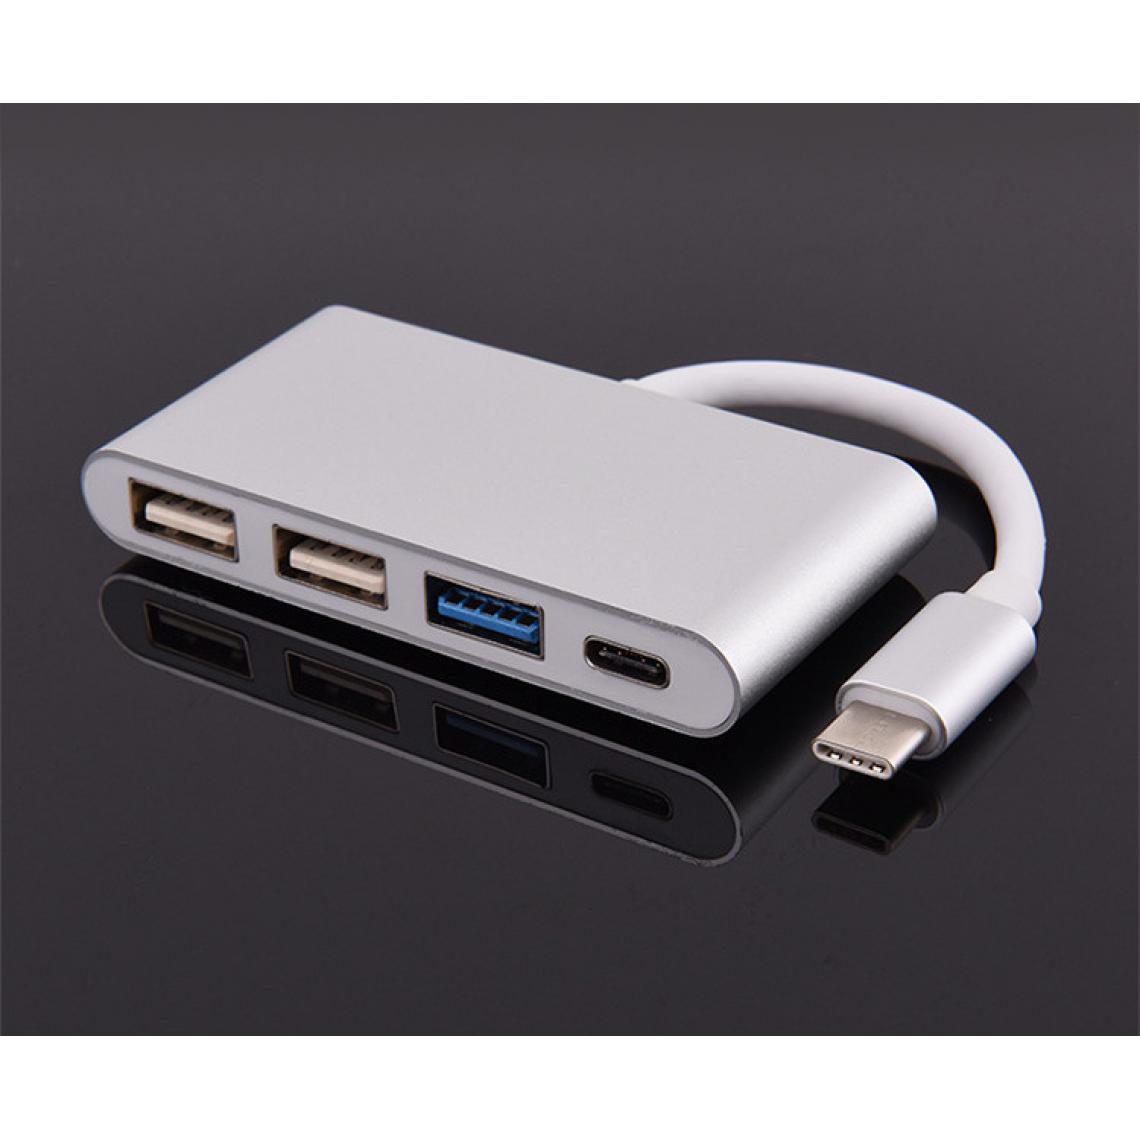 Shot - Multi Adaptateur 4 en 1 Type C pour LeEco Le 2 Smartphone Hub 2 ports USB 2.0 1 Port USB 3.0 (ARGENT) - Hub